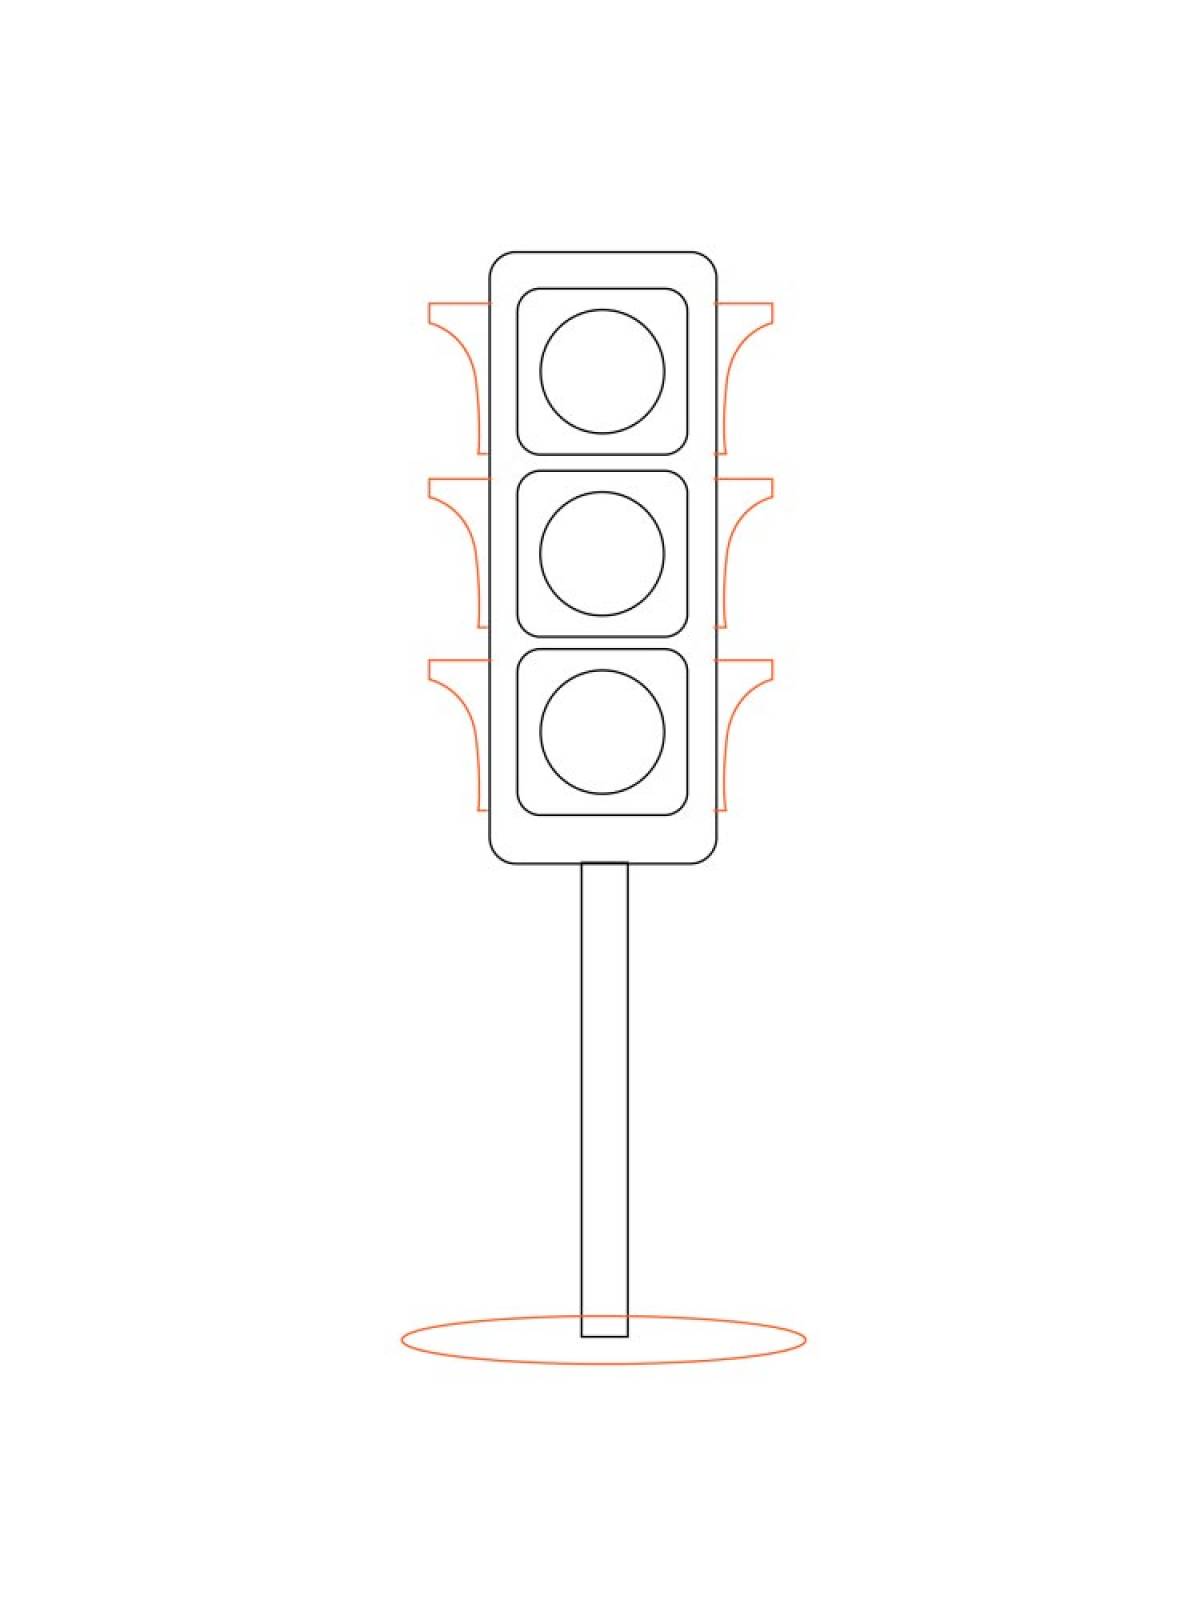 Traffic light 11